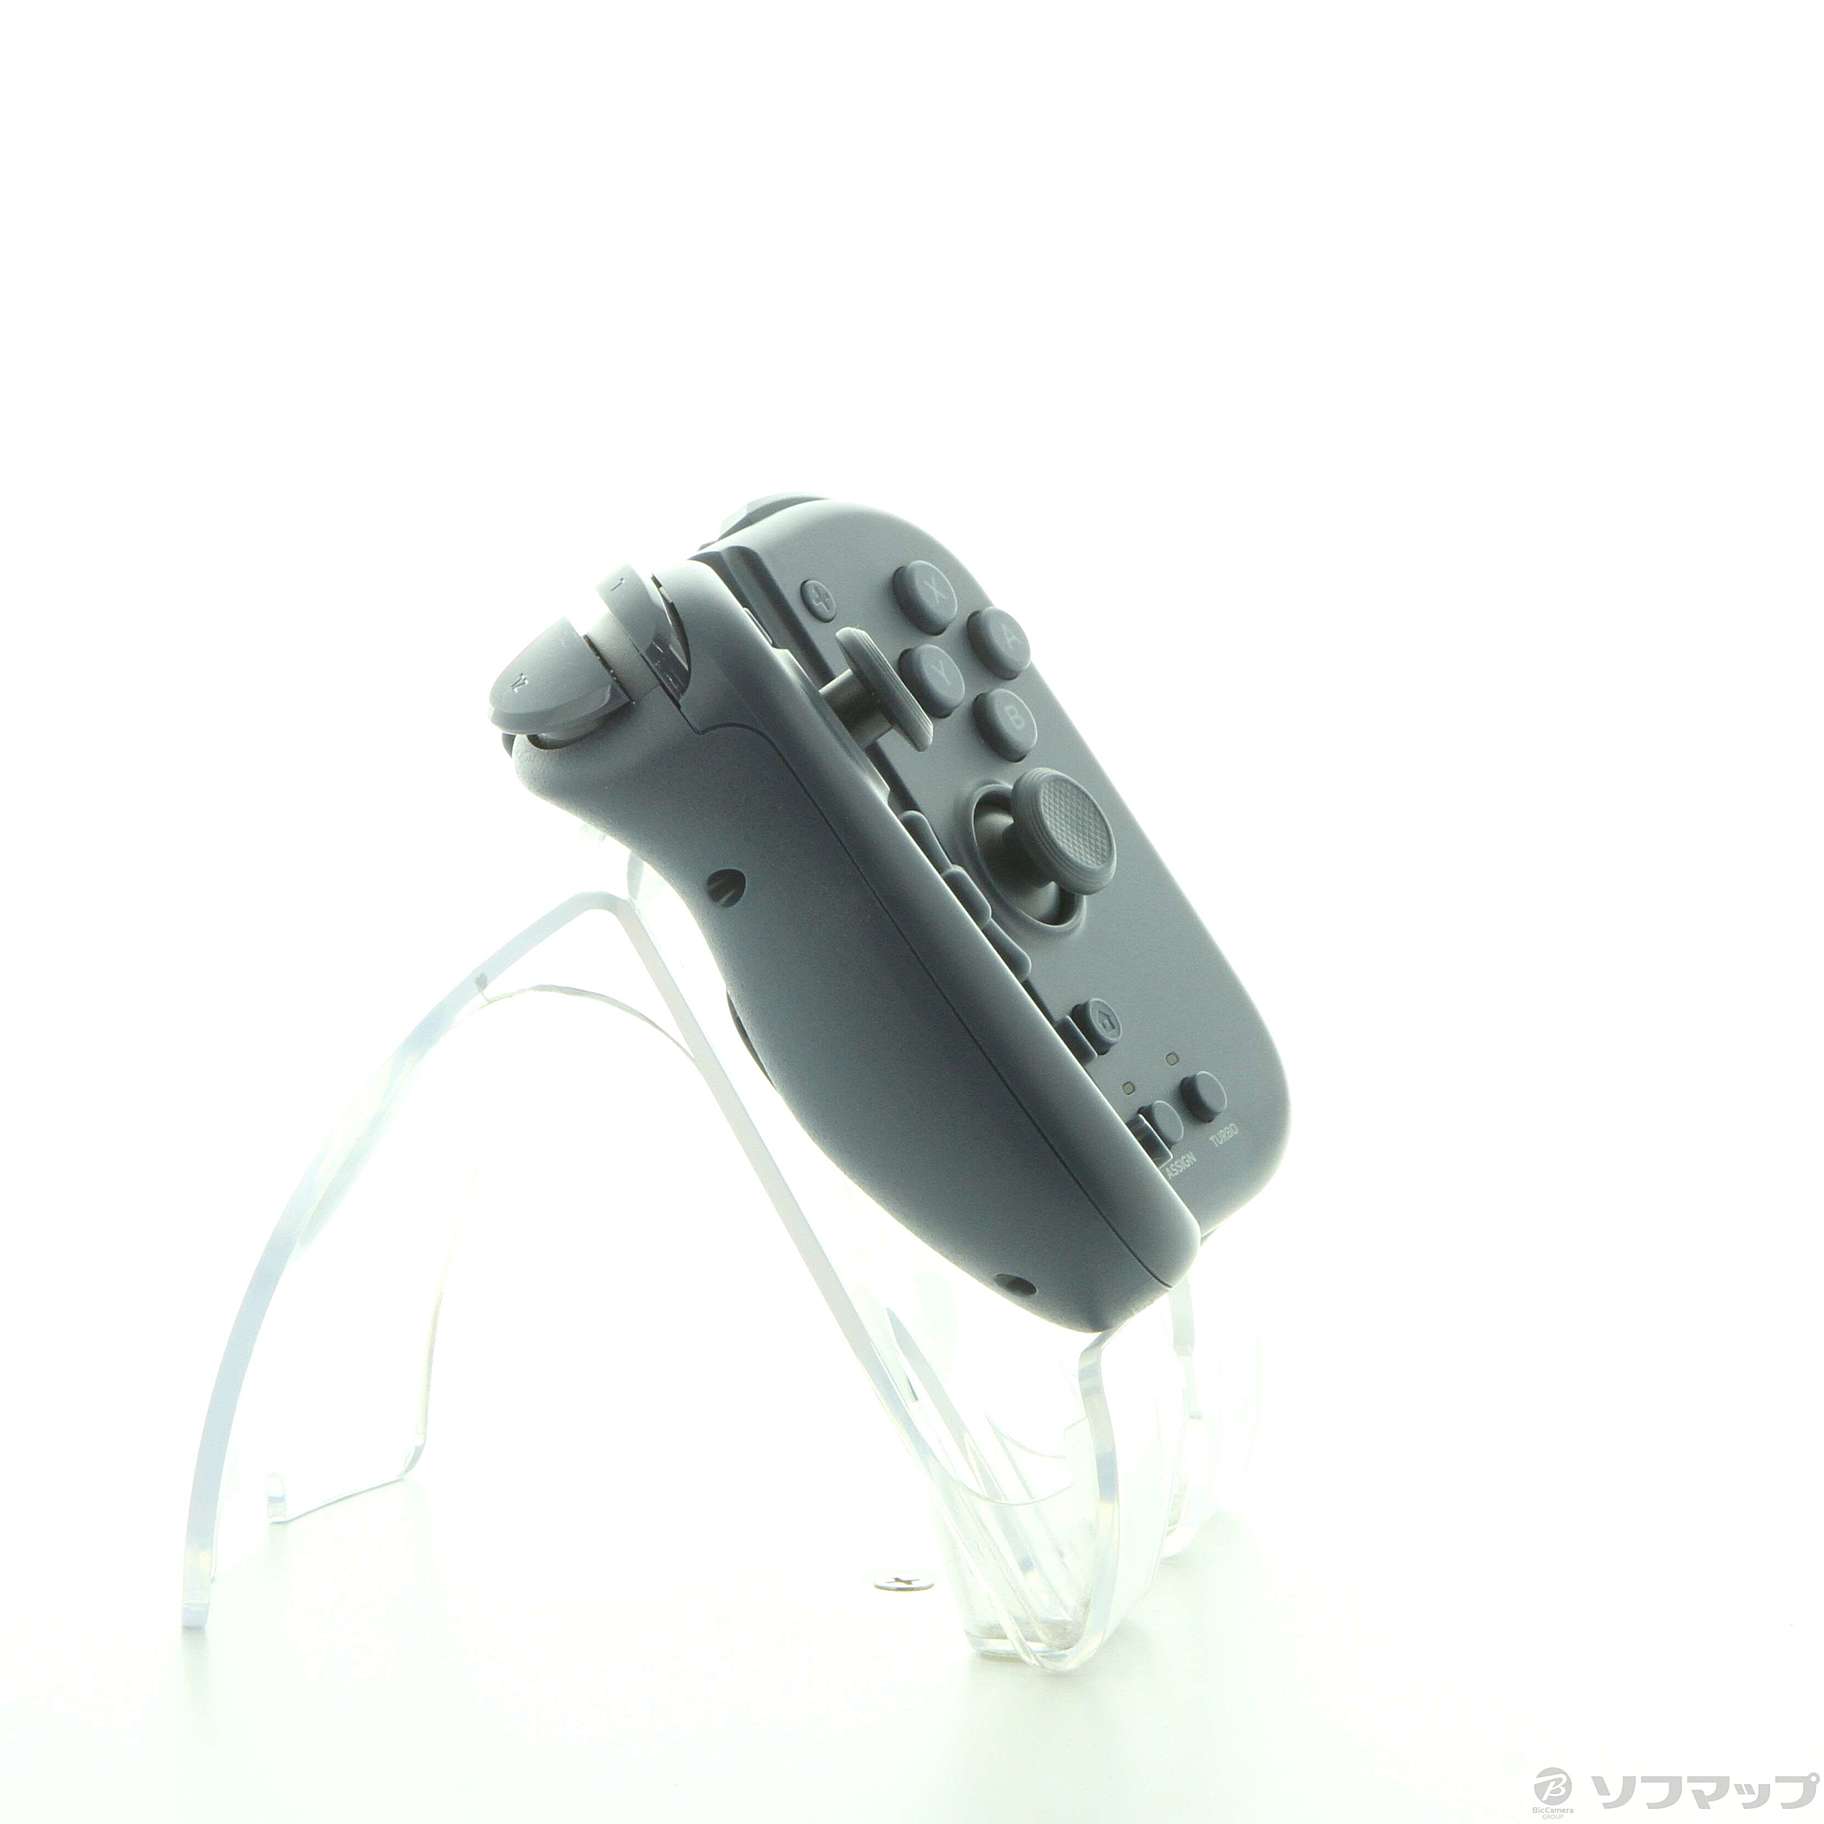 中古品〕 グリップコントローラー Fit for Nintendo Switch 